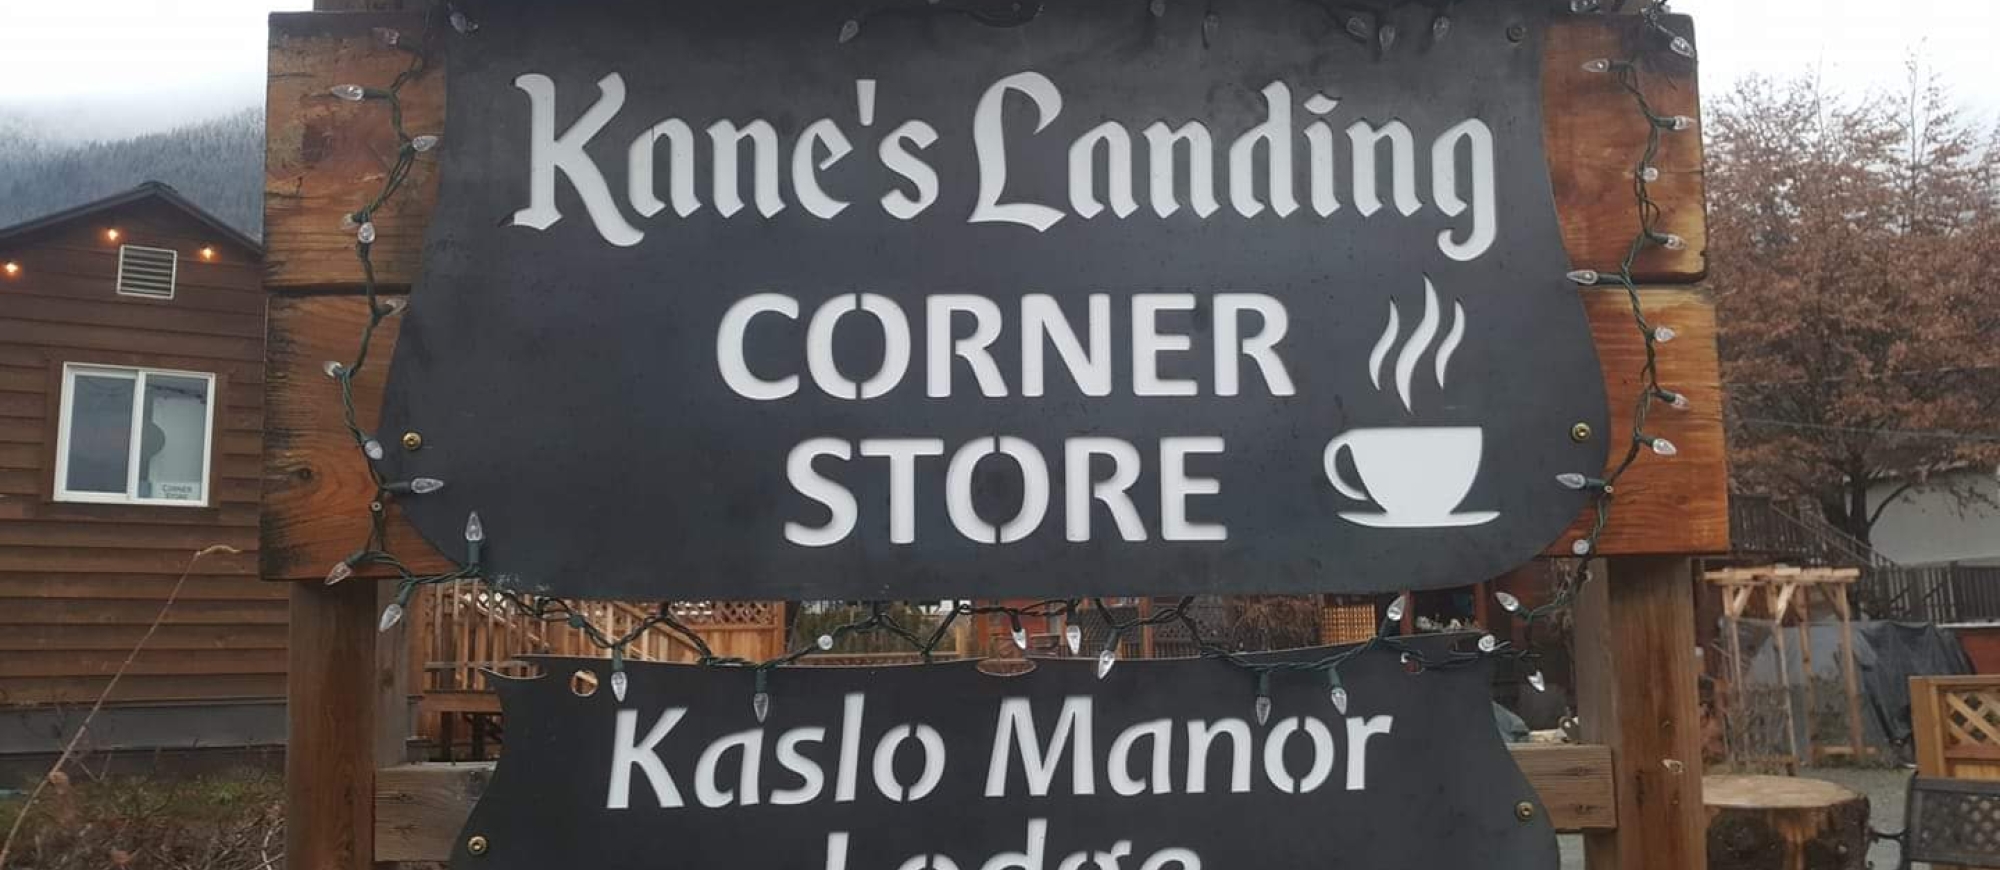 Kane’s Landing Corner Store